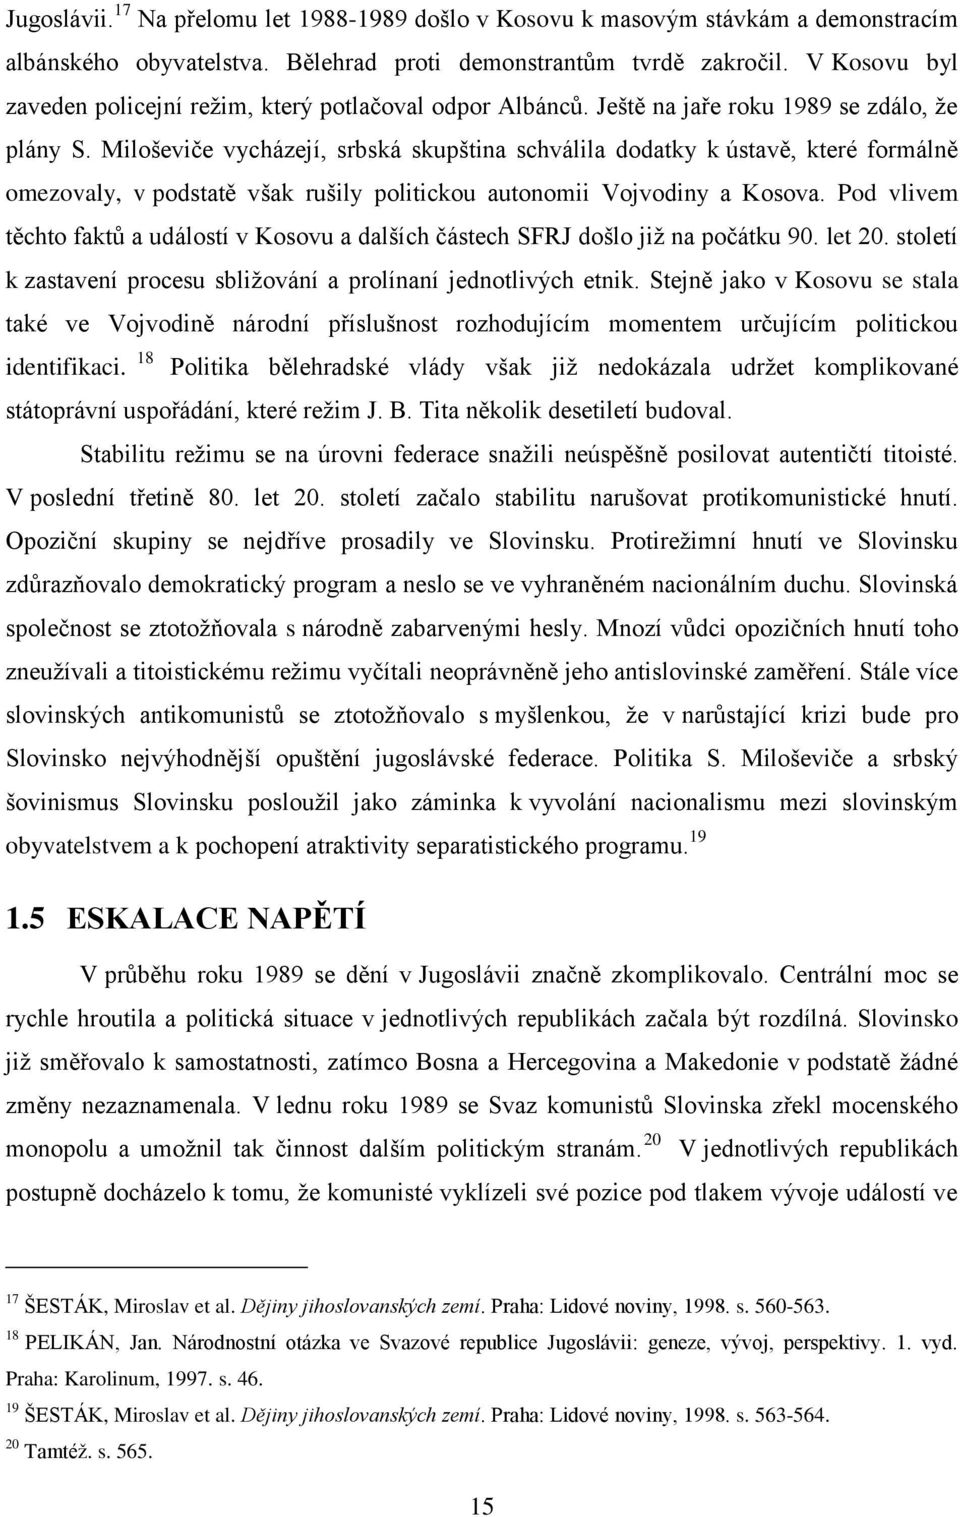 Miloševiče vycházejí, srbská skupština schválila dodatky k ústavě, které formálně omezovaly, v podstatě však rušily politickou autonomii Vojvodiny a Kosova.